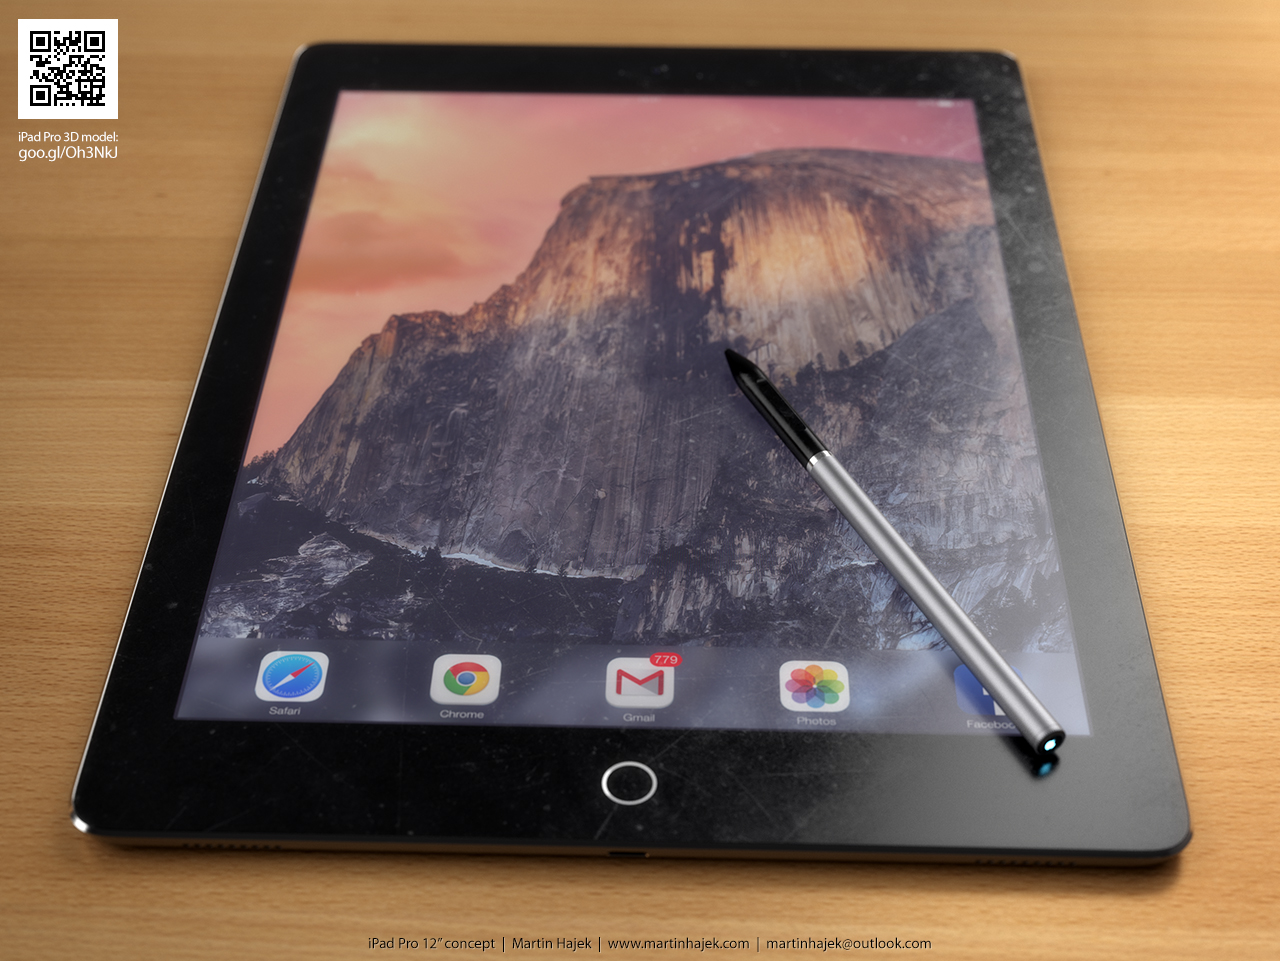 ลือ iPad Pro มาพร้อมช่อง USB 3.0 ระบบชาร์จไฟไว และต่อ Mouse และ Keyboard ได้